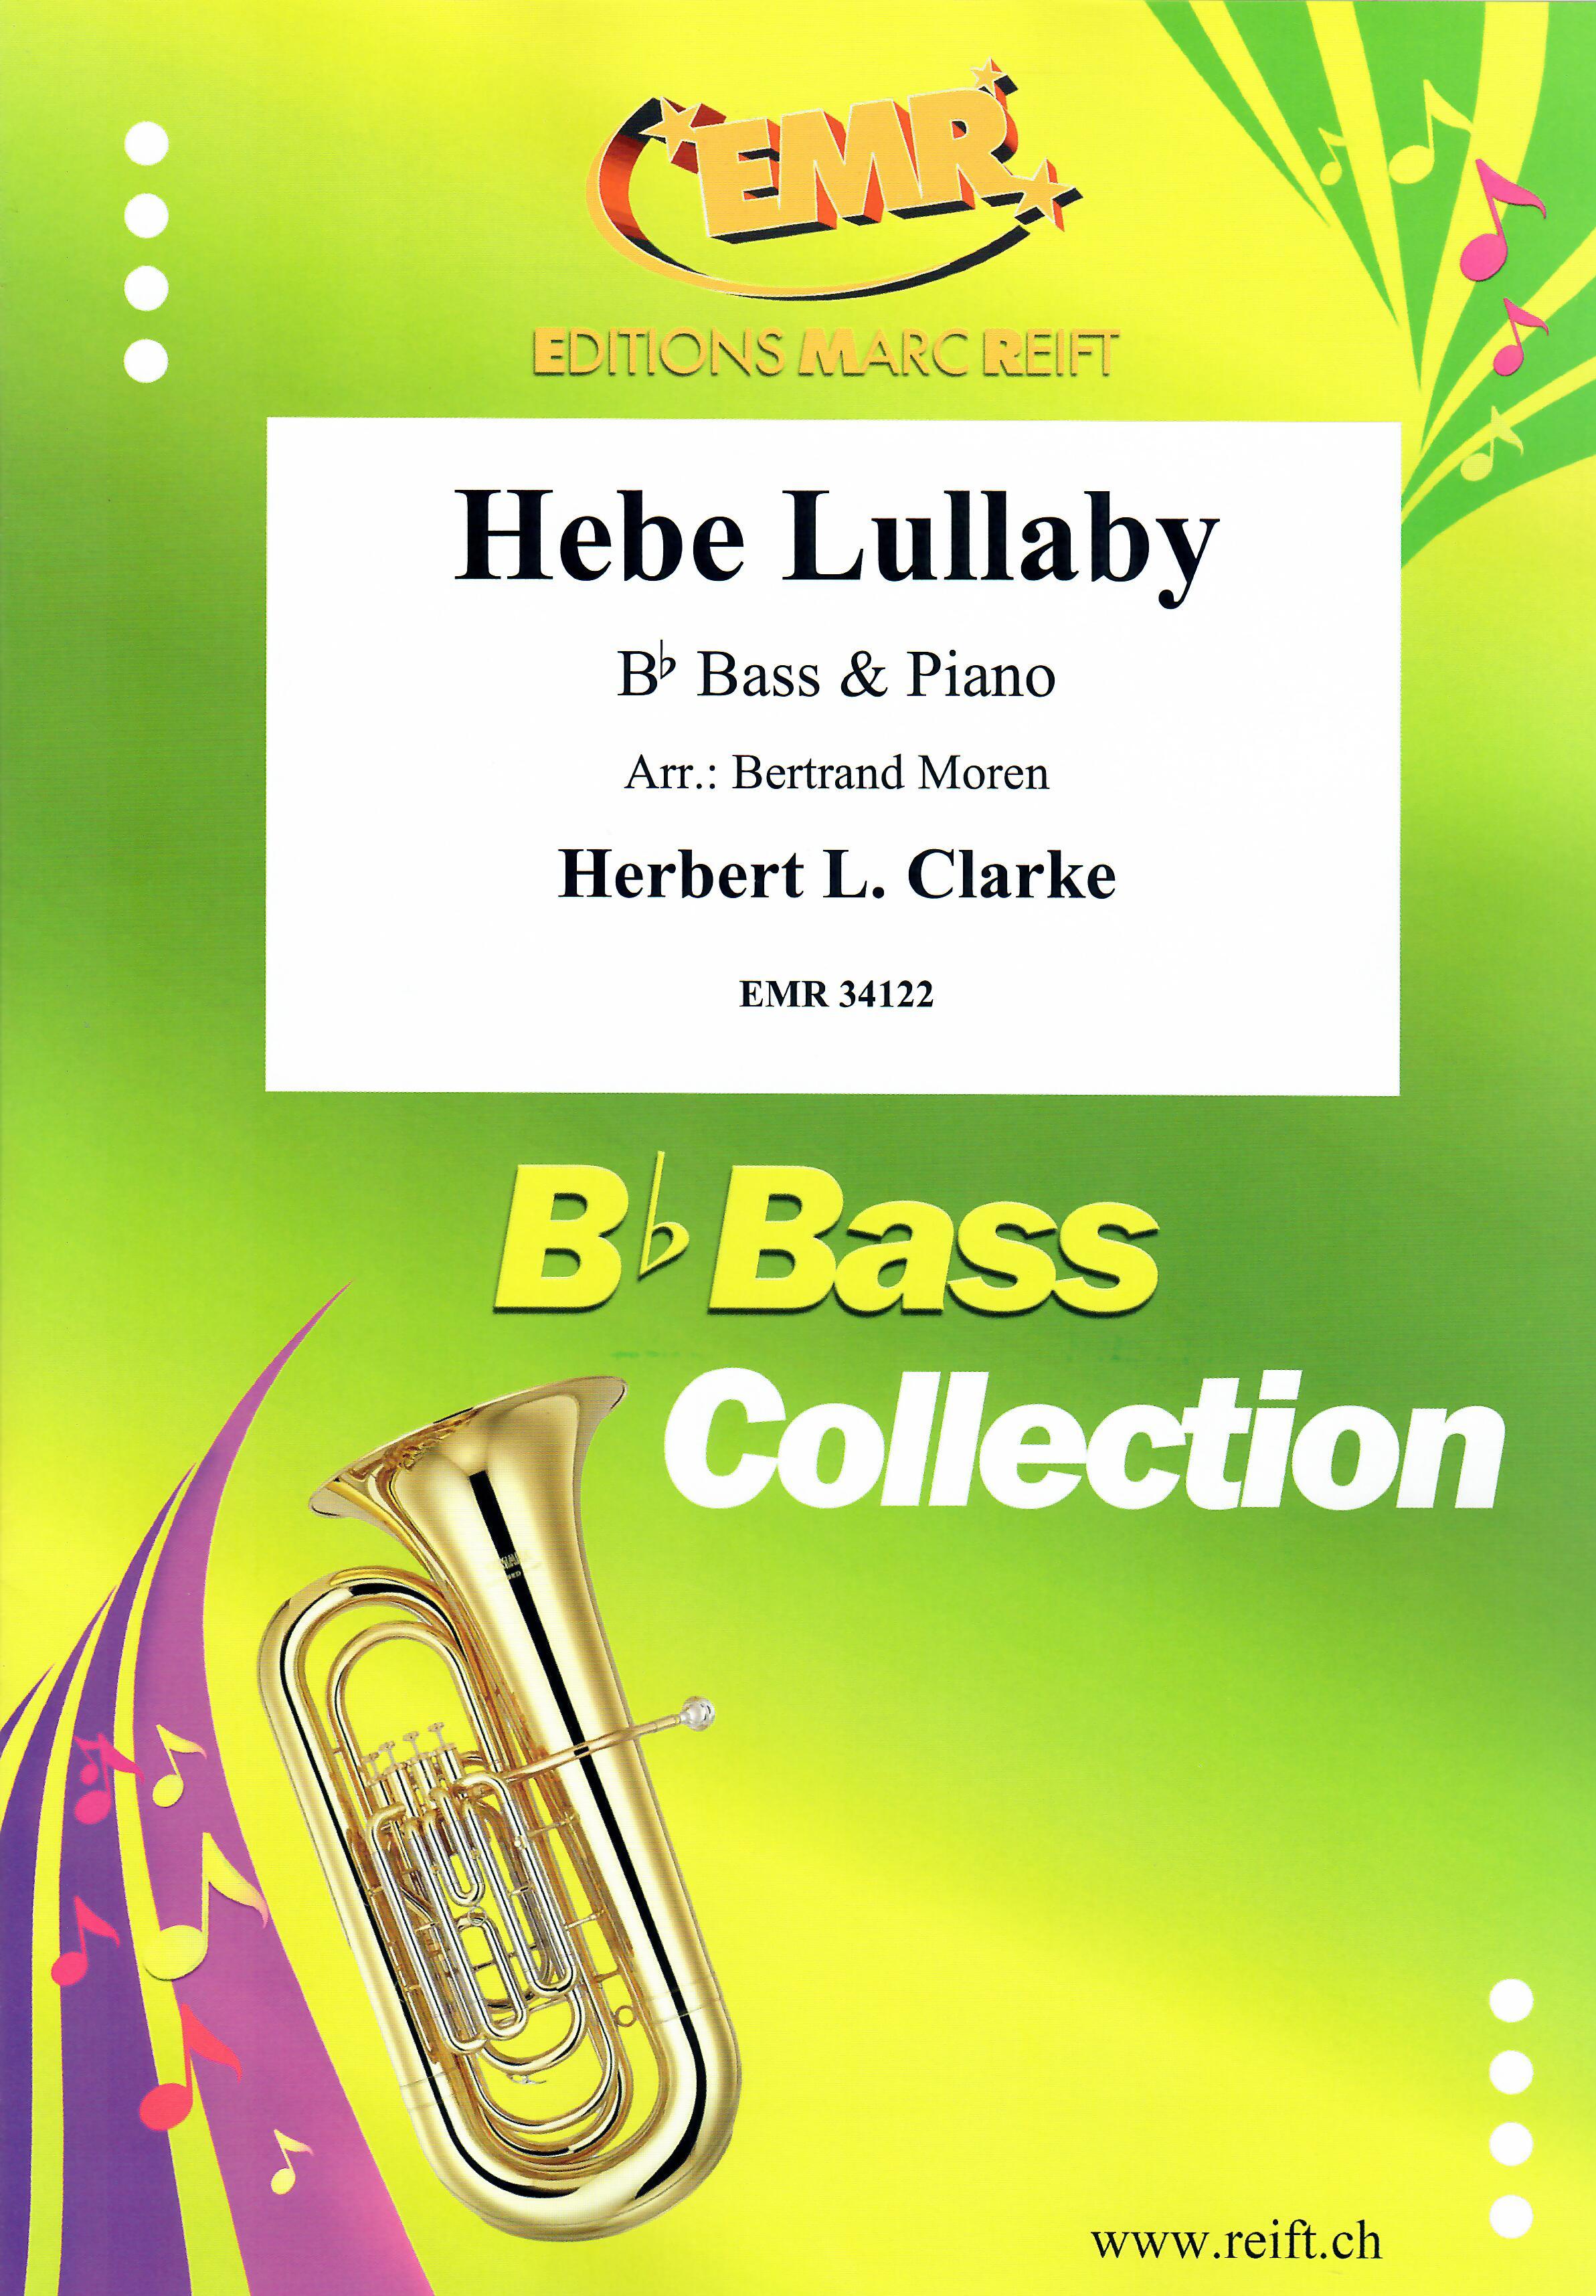 HEBE LULLABY, SOLOS - E♭. Bass